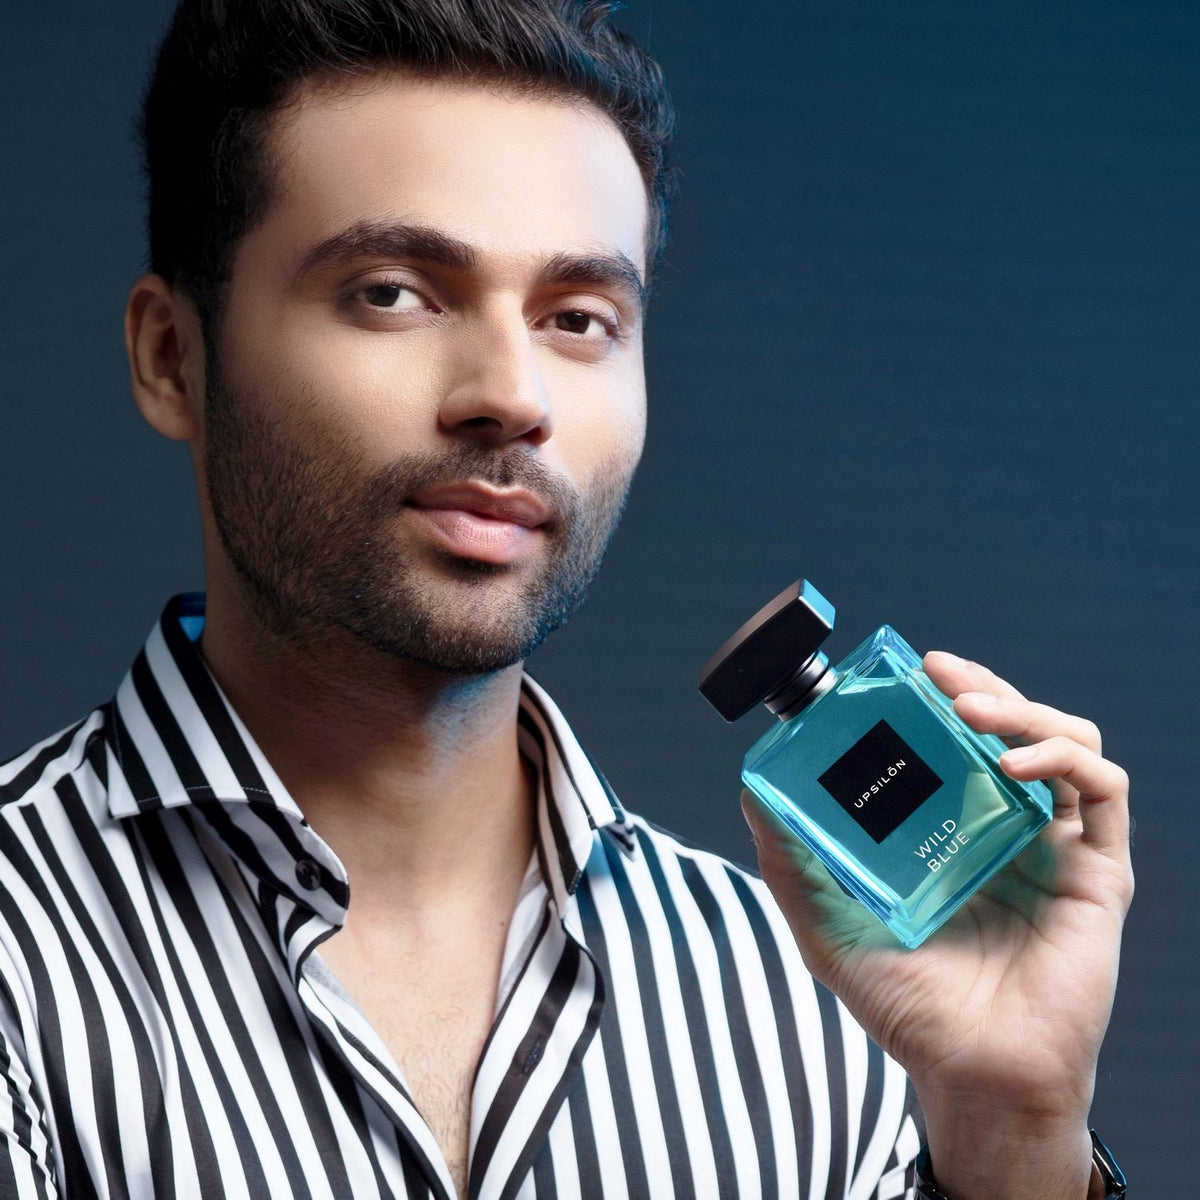 UPSILON Wild Blue Eau de Parfum for Men, 100ml. Premium, long-lasting, fresh and powerful fragrance. Travel-friendly luxury parfum scent.